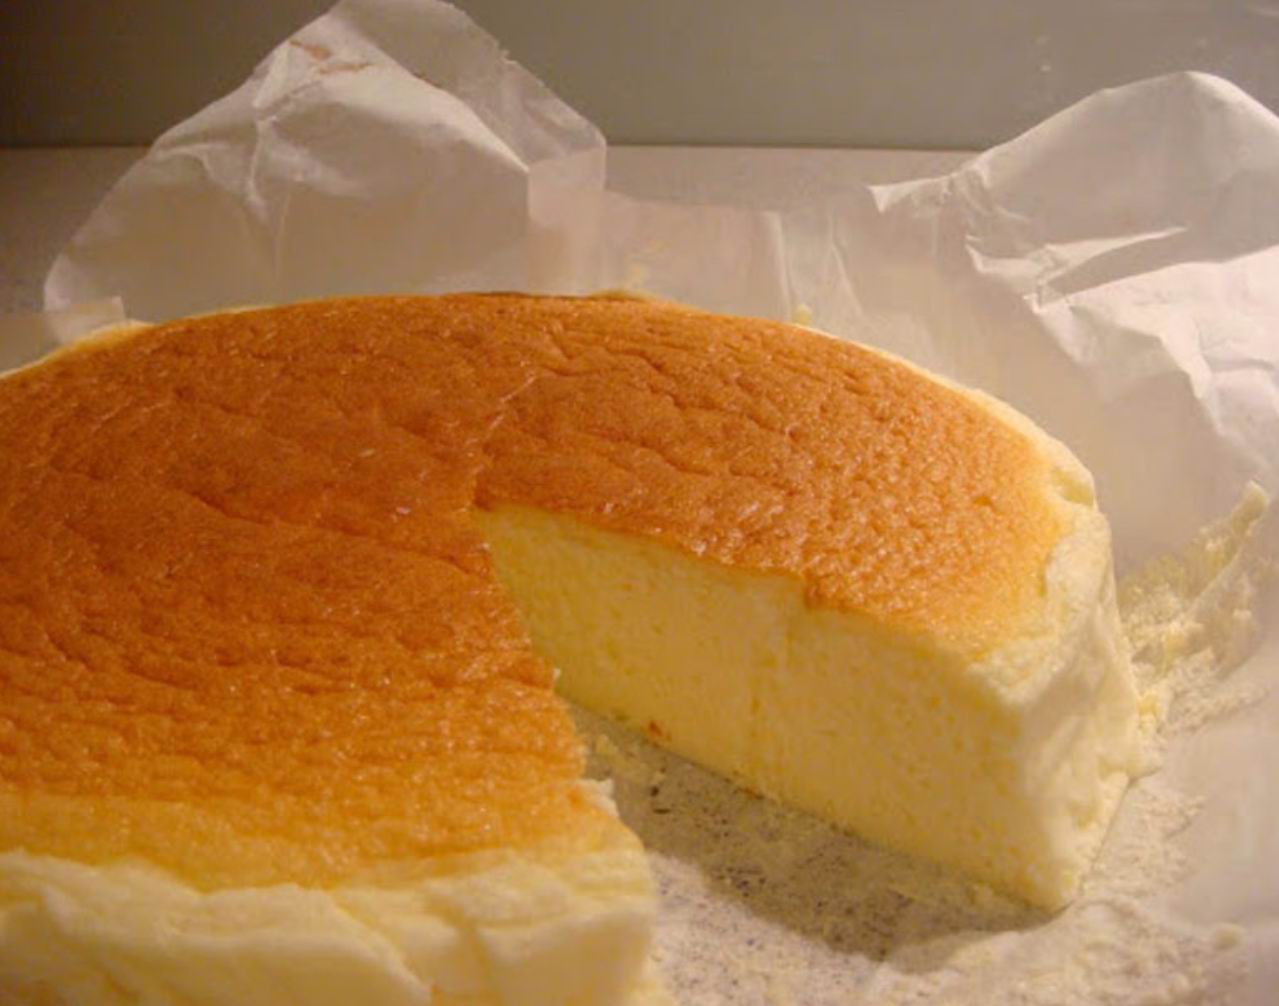 Cheesecake japonez